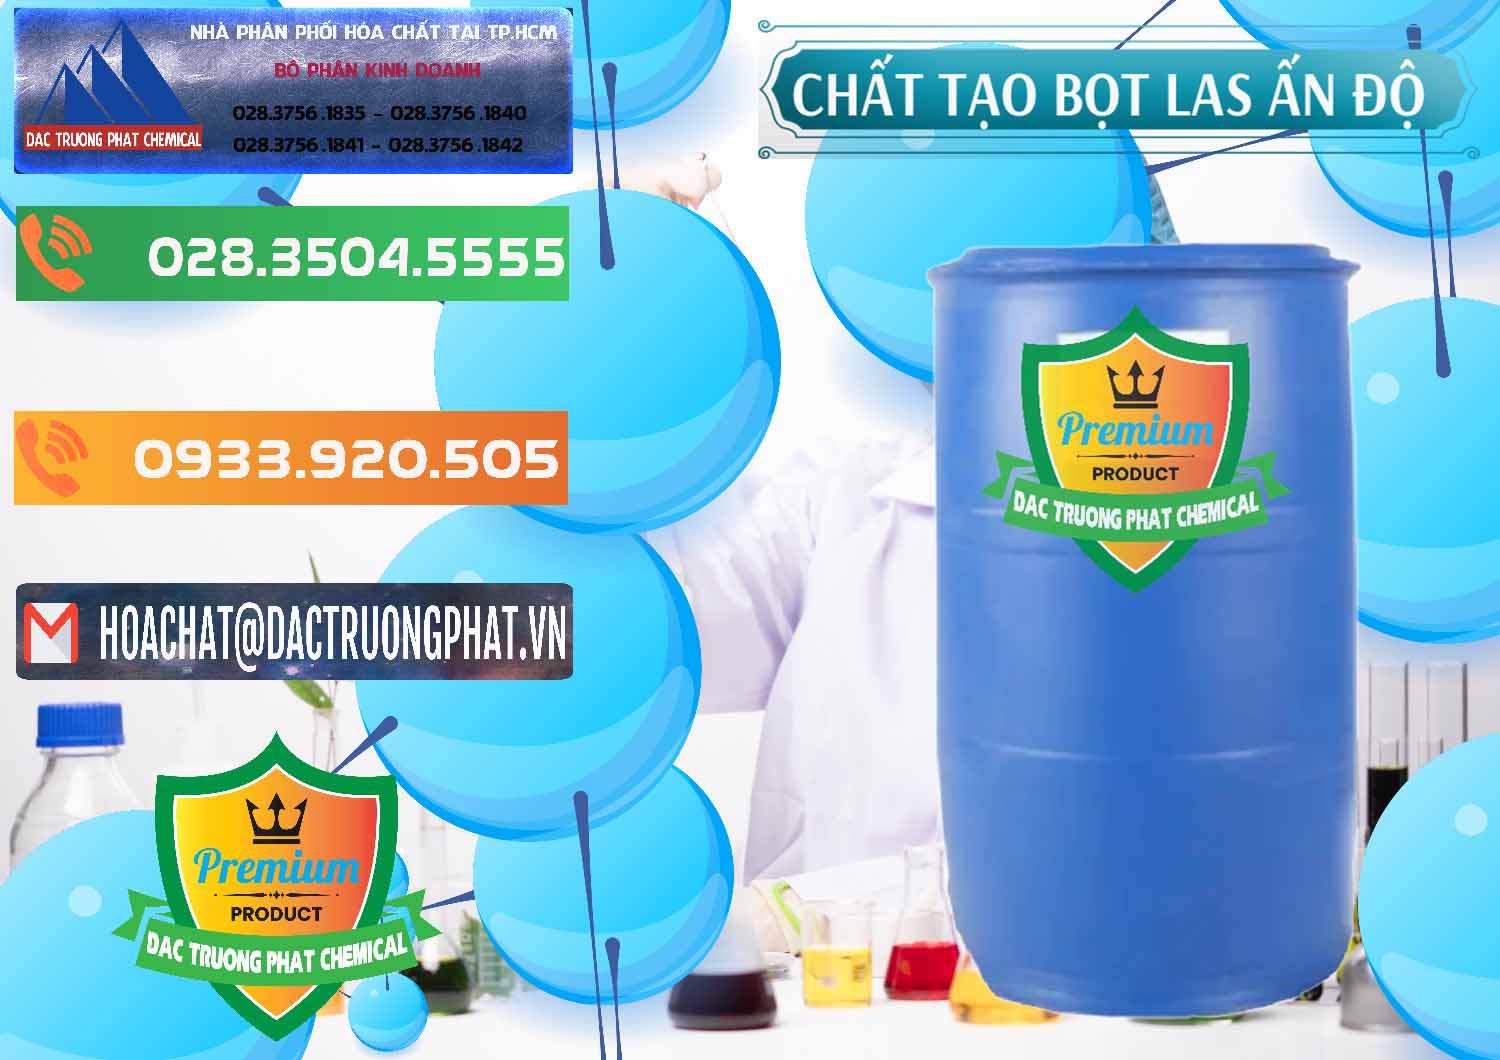 Công ty phân phối ( bán ) Chất tạo bọt Las Ấn Độ India - 0477 - Cty chuyên nhập khẩu và phân phối hóa chất tại TP.HCM - hoachatxulynuoc.com.vn